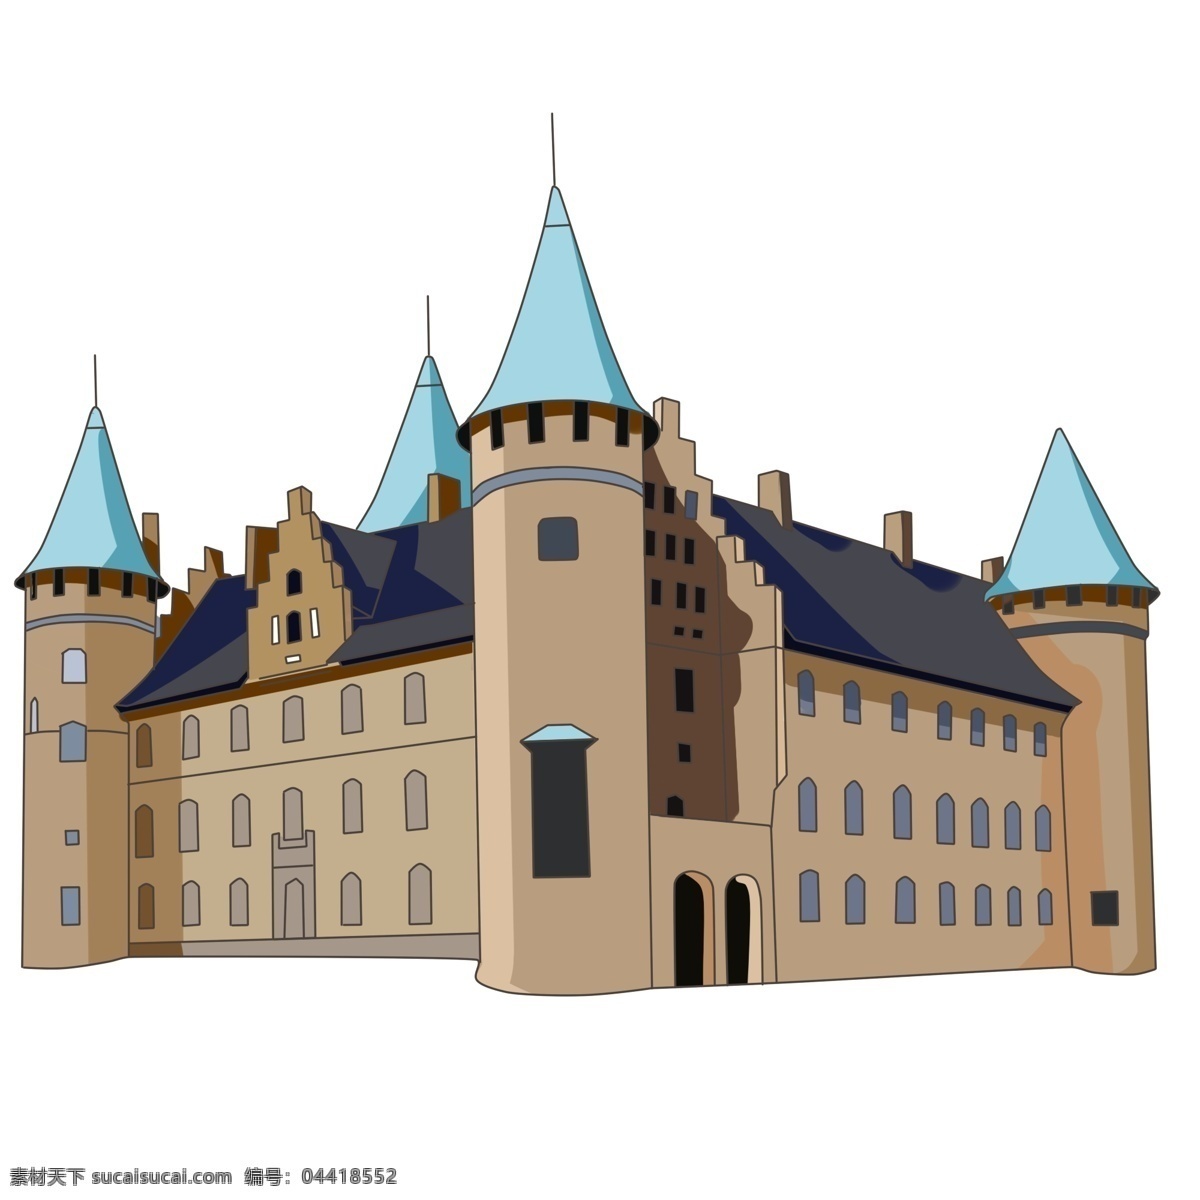 漂亮 城堡 装饰 插画 漂亮的城堡 创意城堡 城堡装饰 城堡插画 立体城堡 城堡建筑 古代的城堡